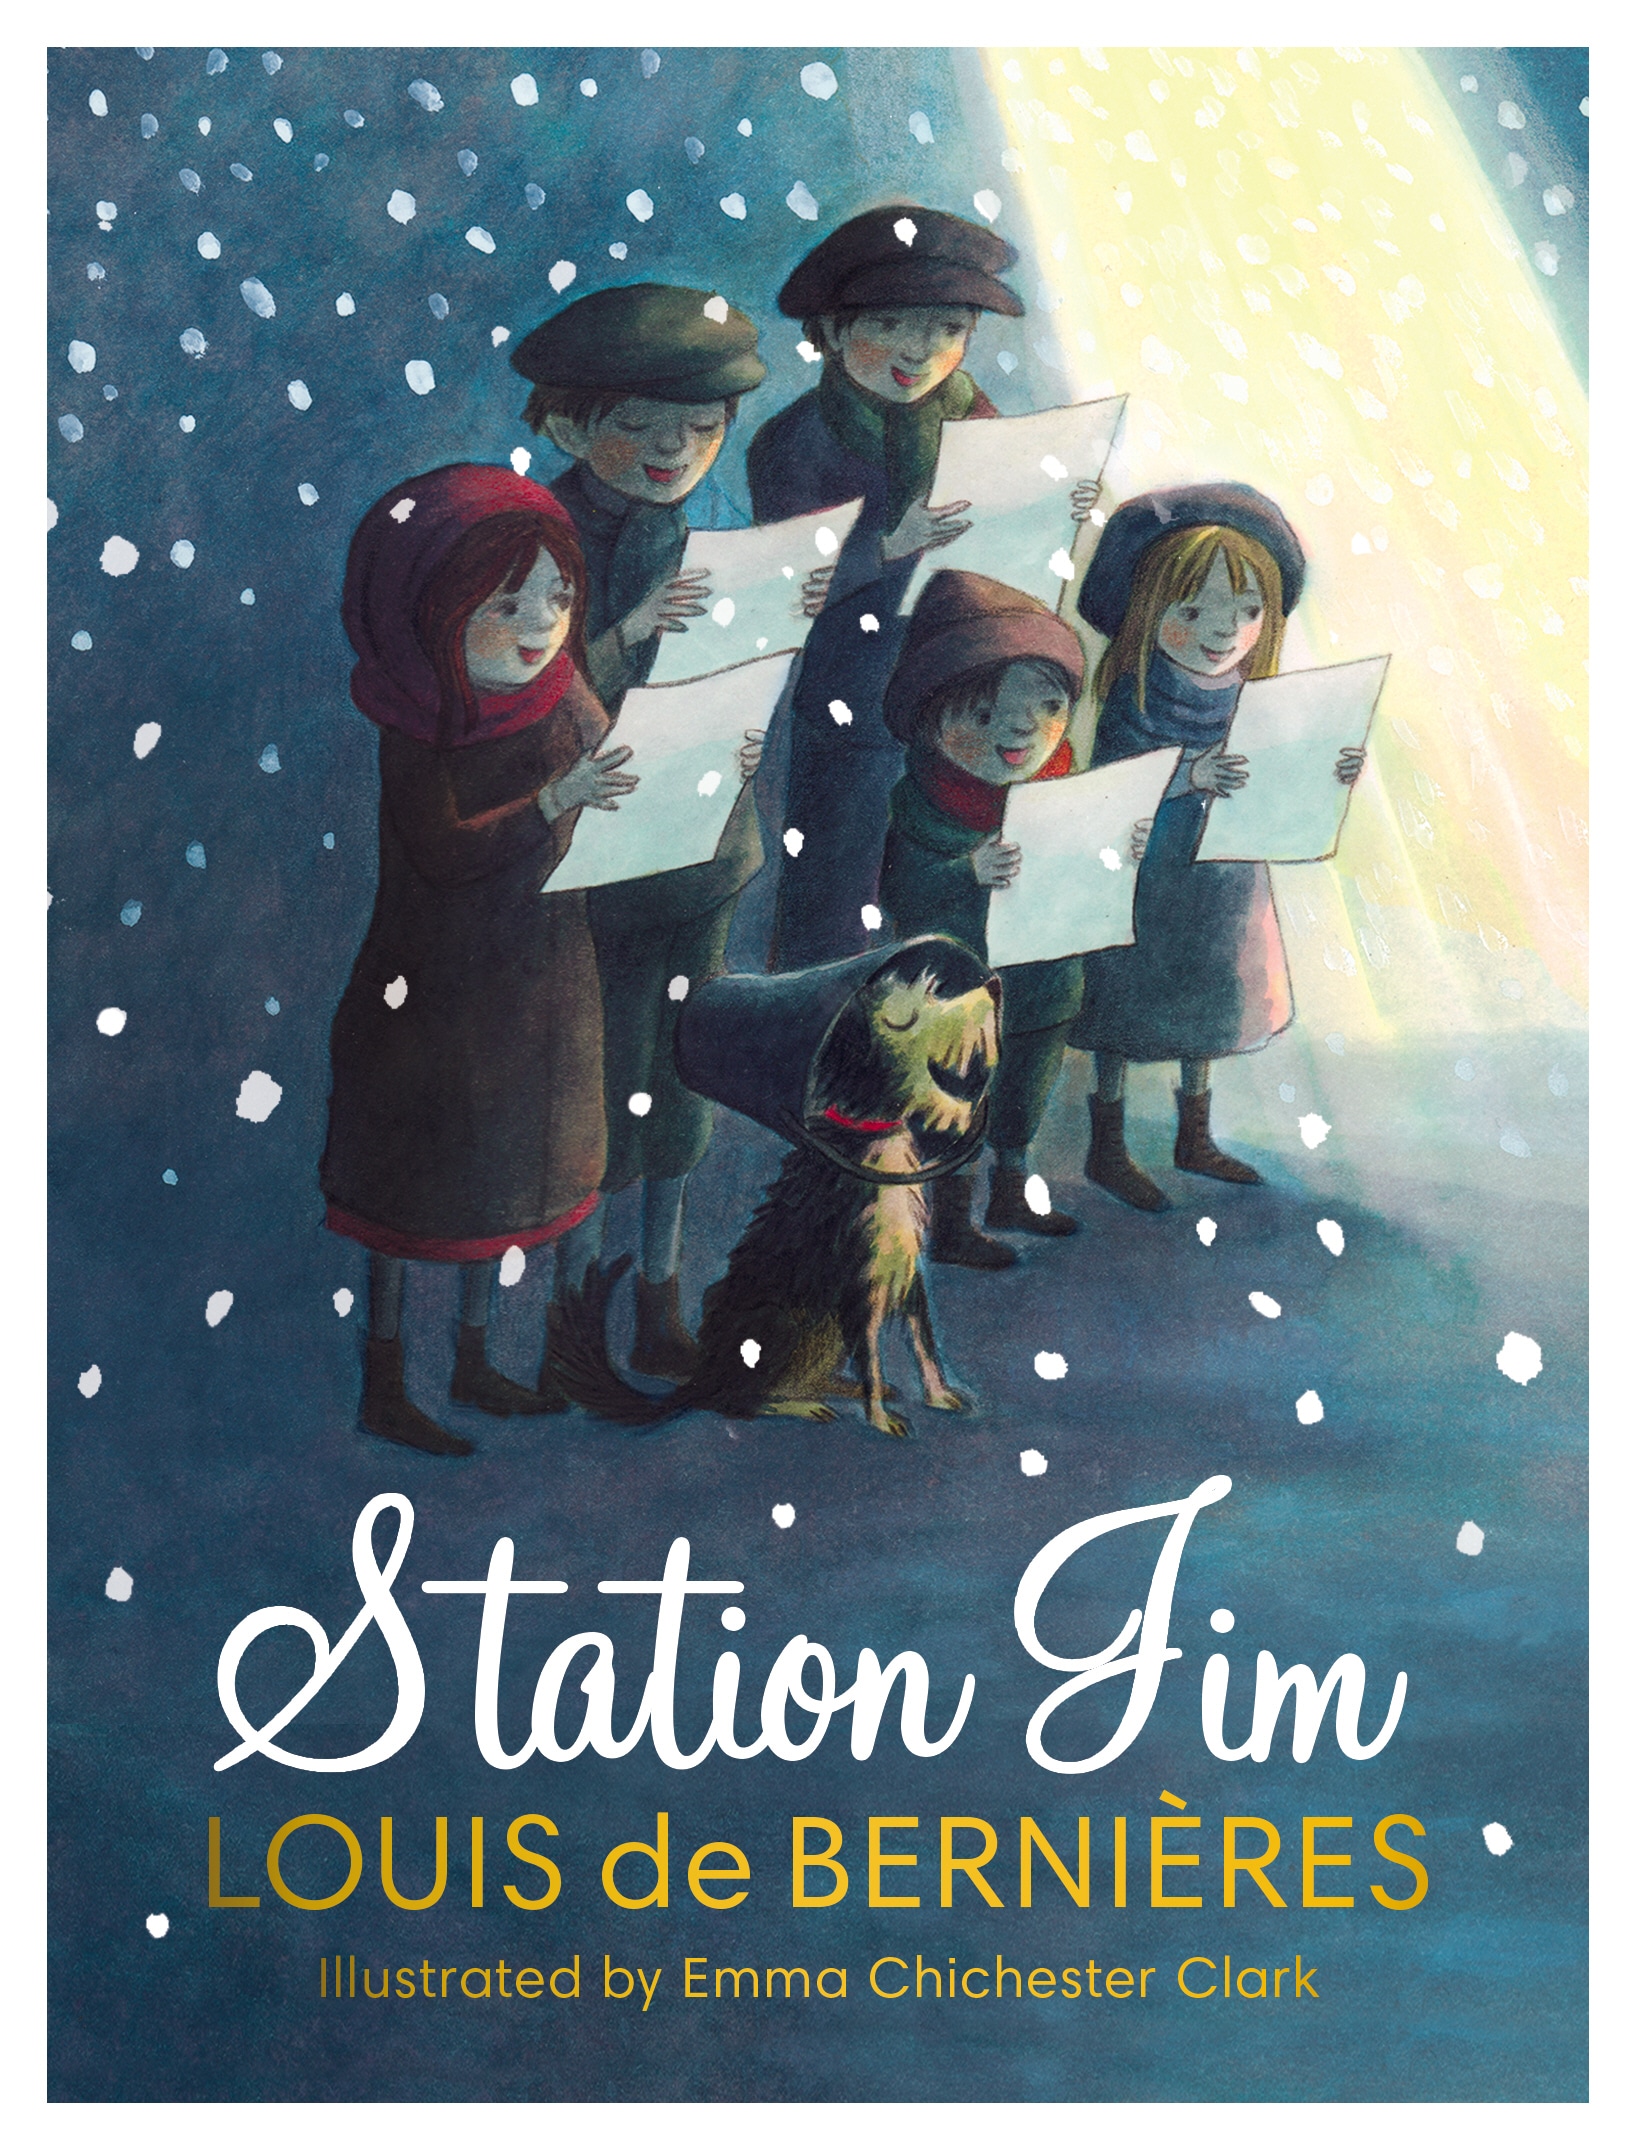 Book “Station Jim” by Louis de Bernières — November 7, 2019